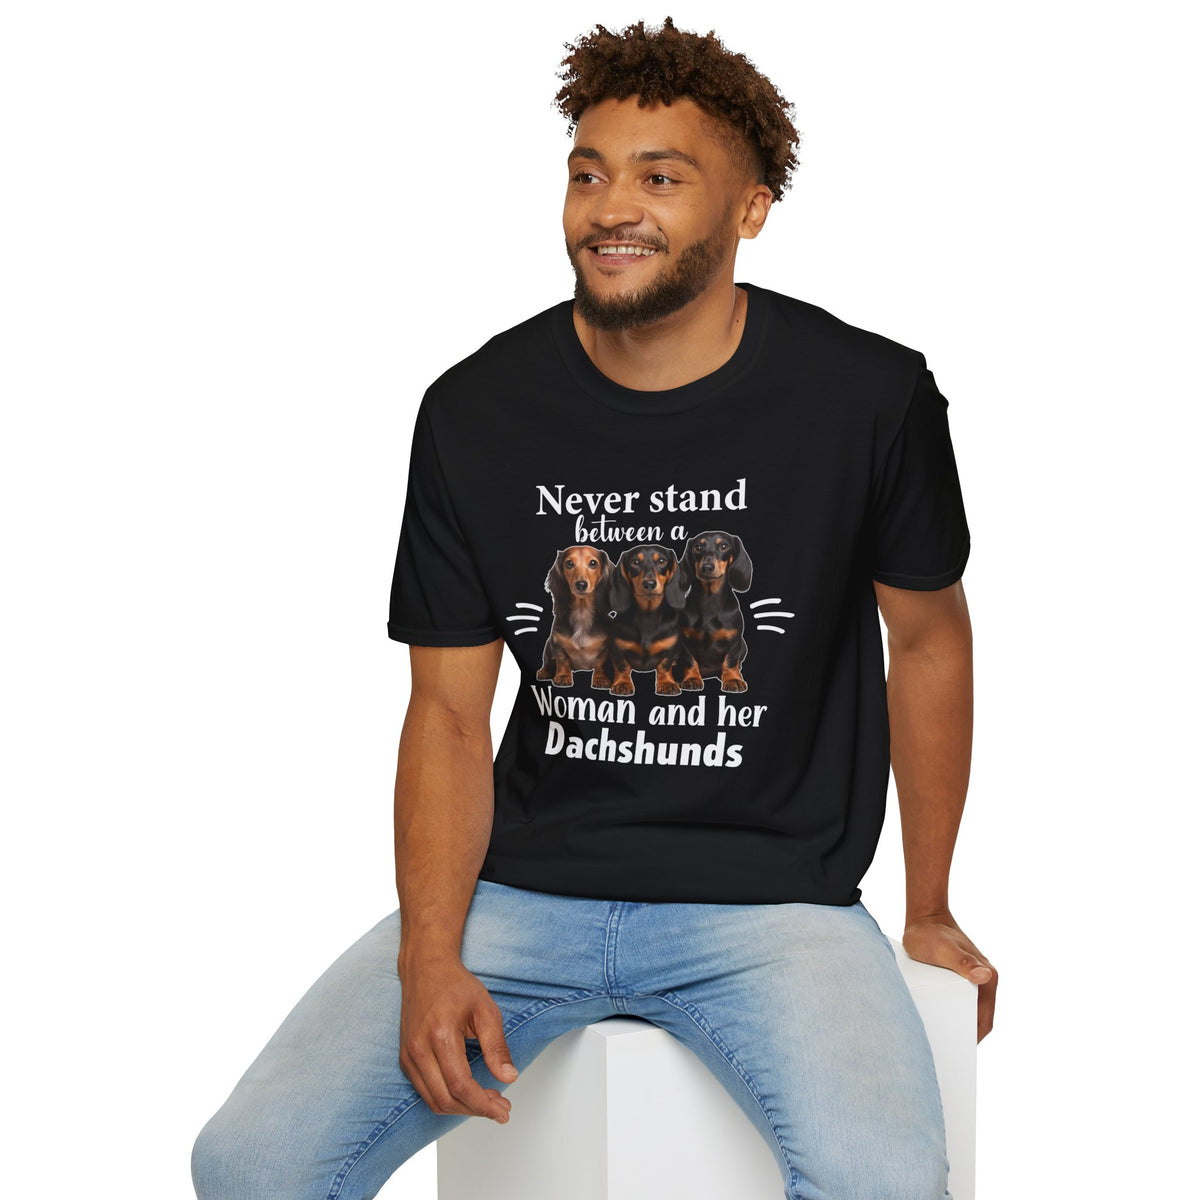 Dachshund T-shirt / Dachshund Dog T-shirt